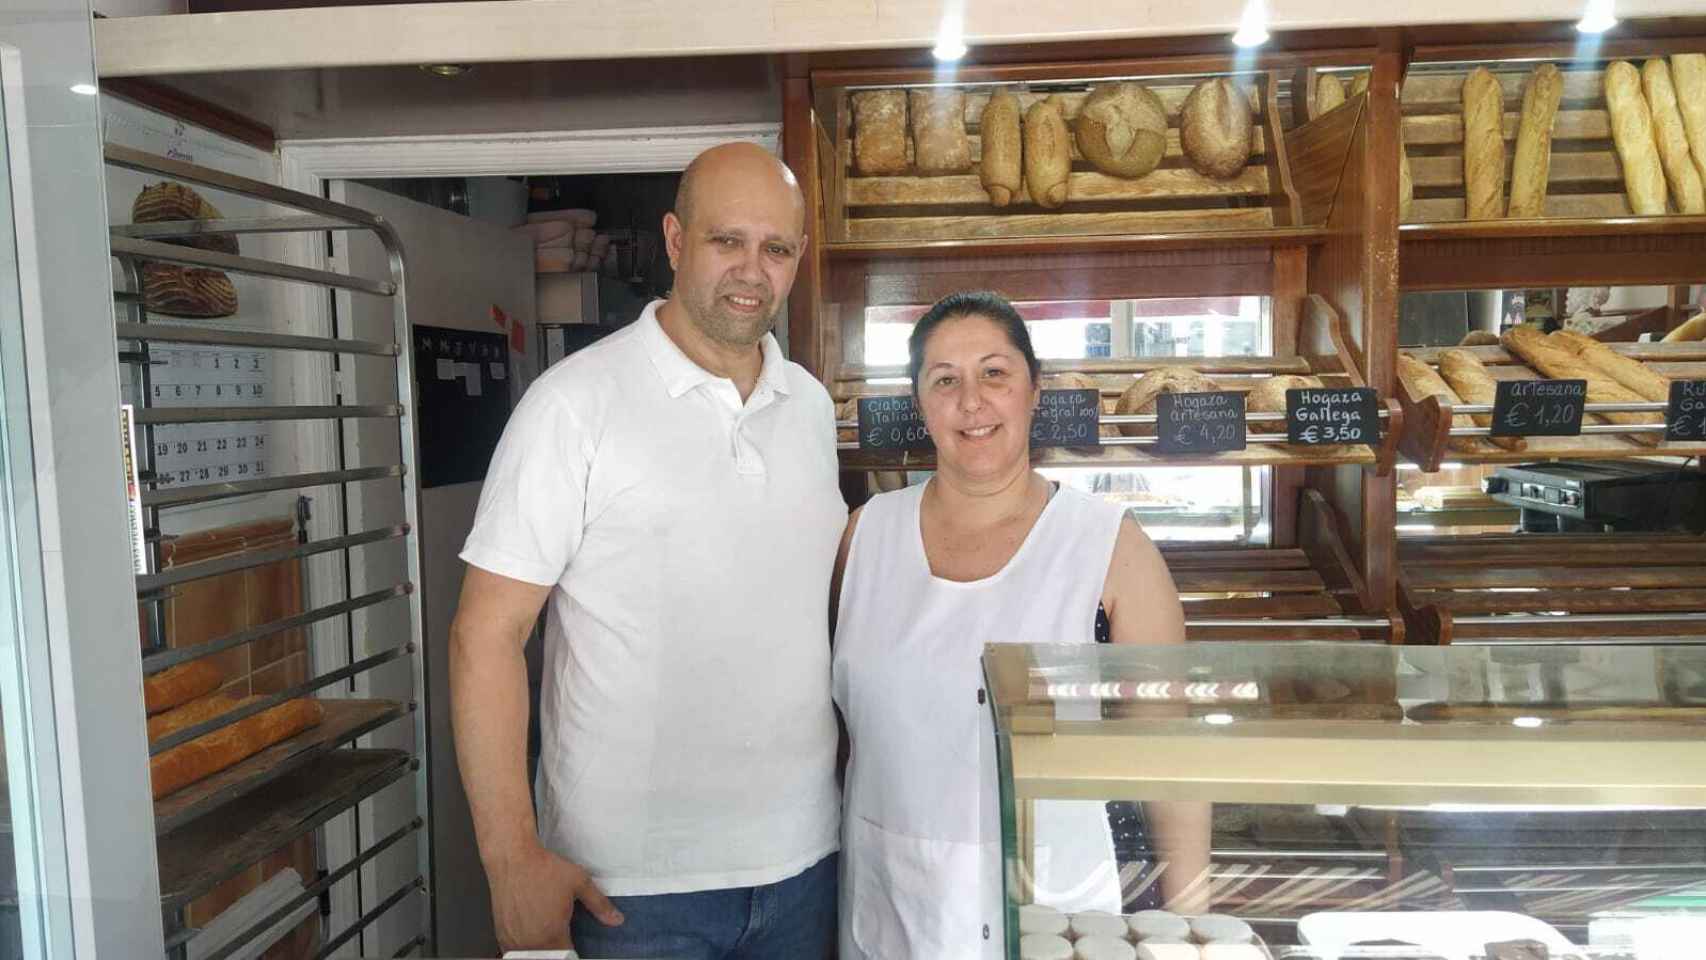 Hugo Ríos y Miriam Matiuss, un matrimonio de panaderos, en su negocio situado en Carabanchel.